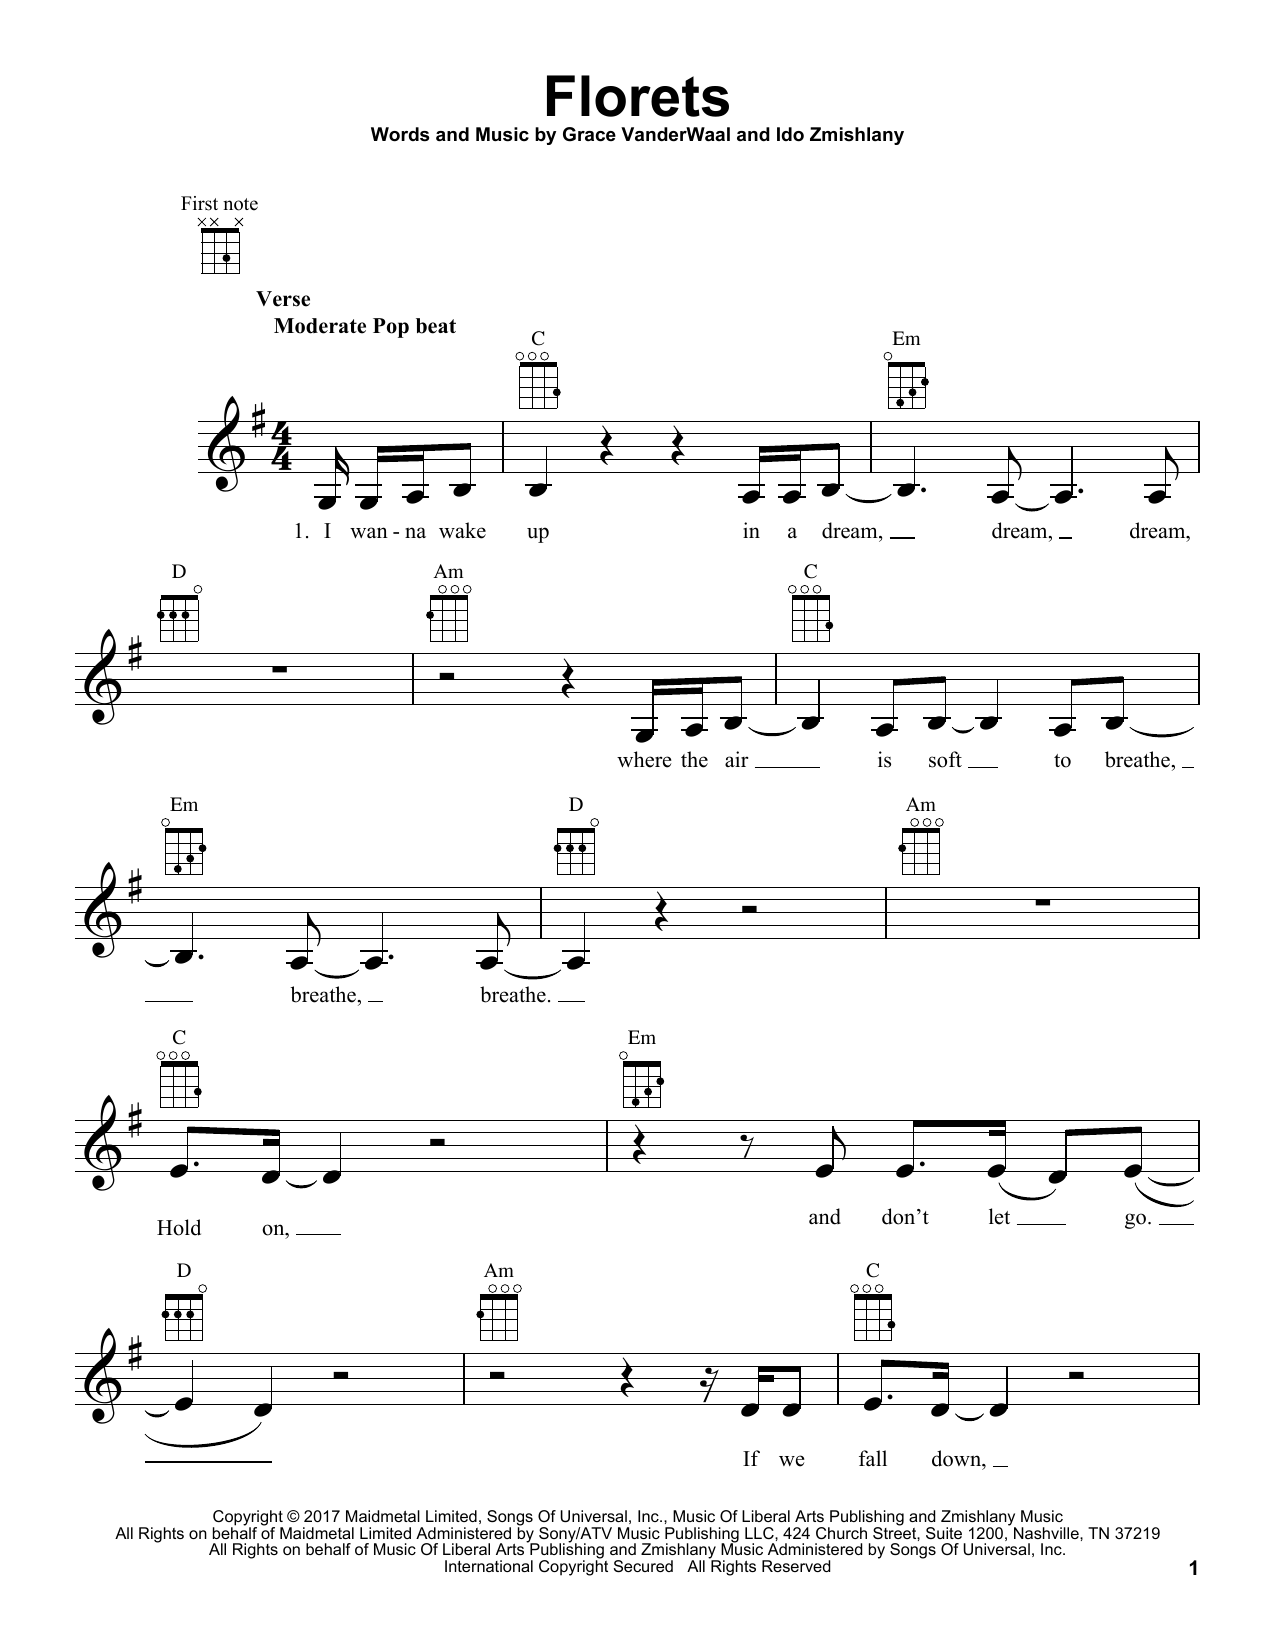 Grace VanderWaal Florets Sheet Music Notes & Chords for Ukulele - Download or Print PDF